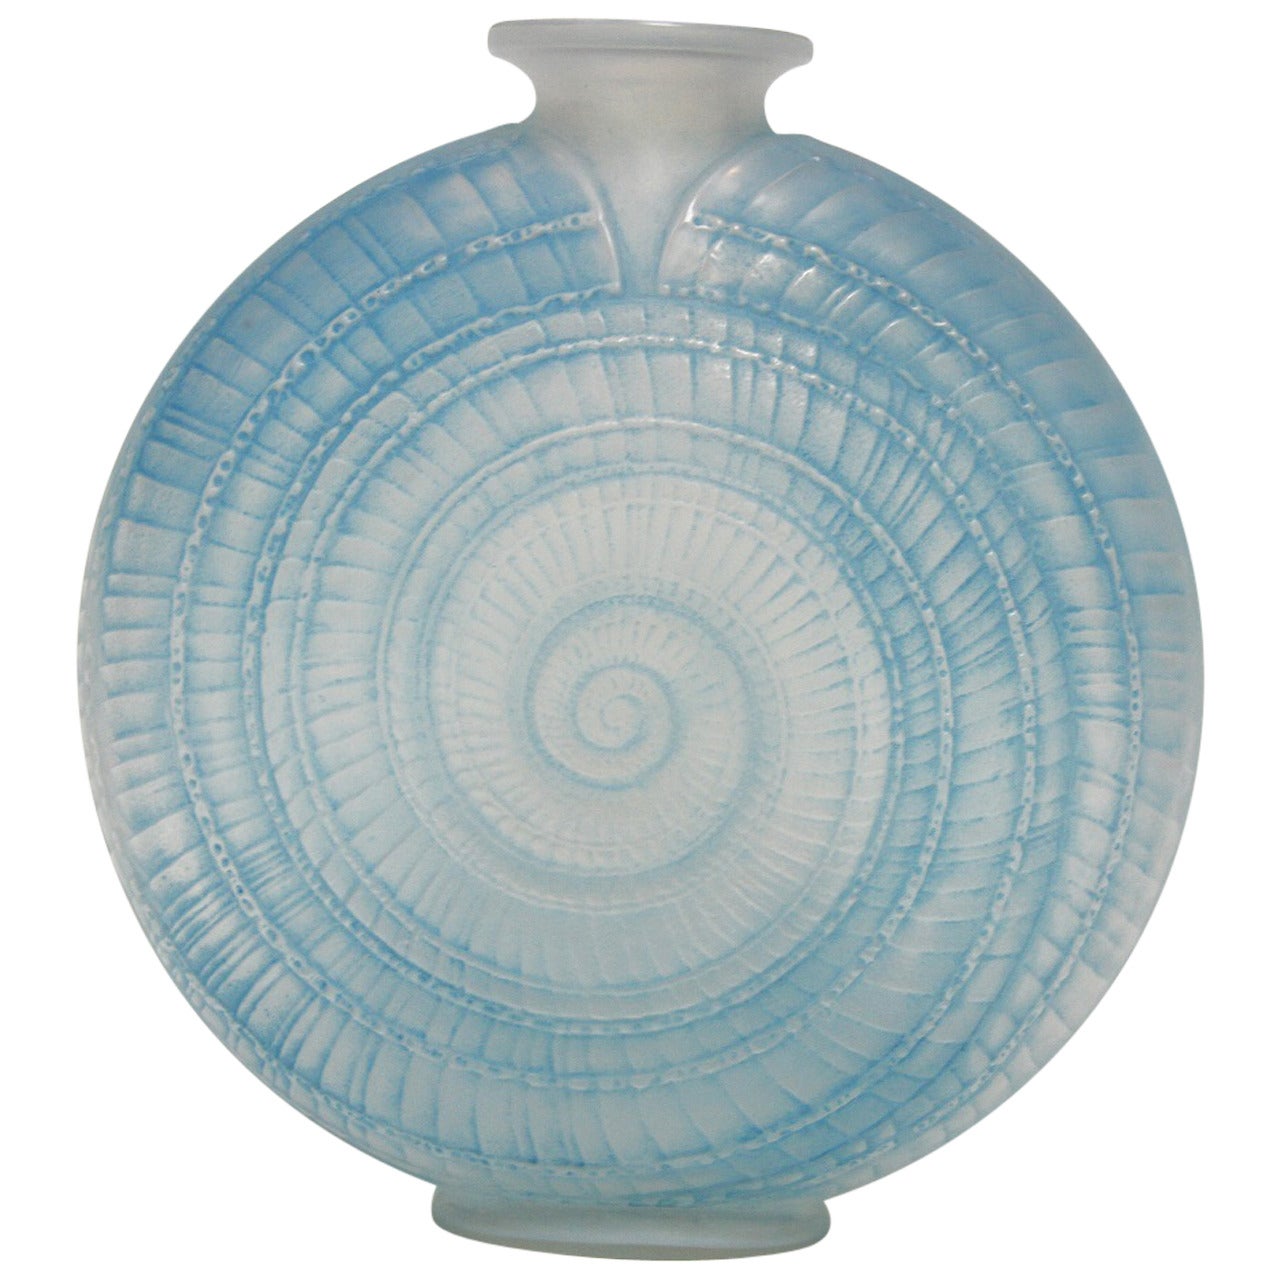 Rene Lalique "Escargot" Glass Vase For Sale